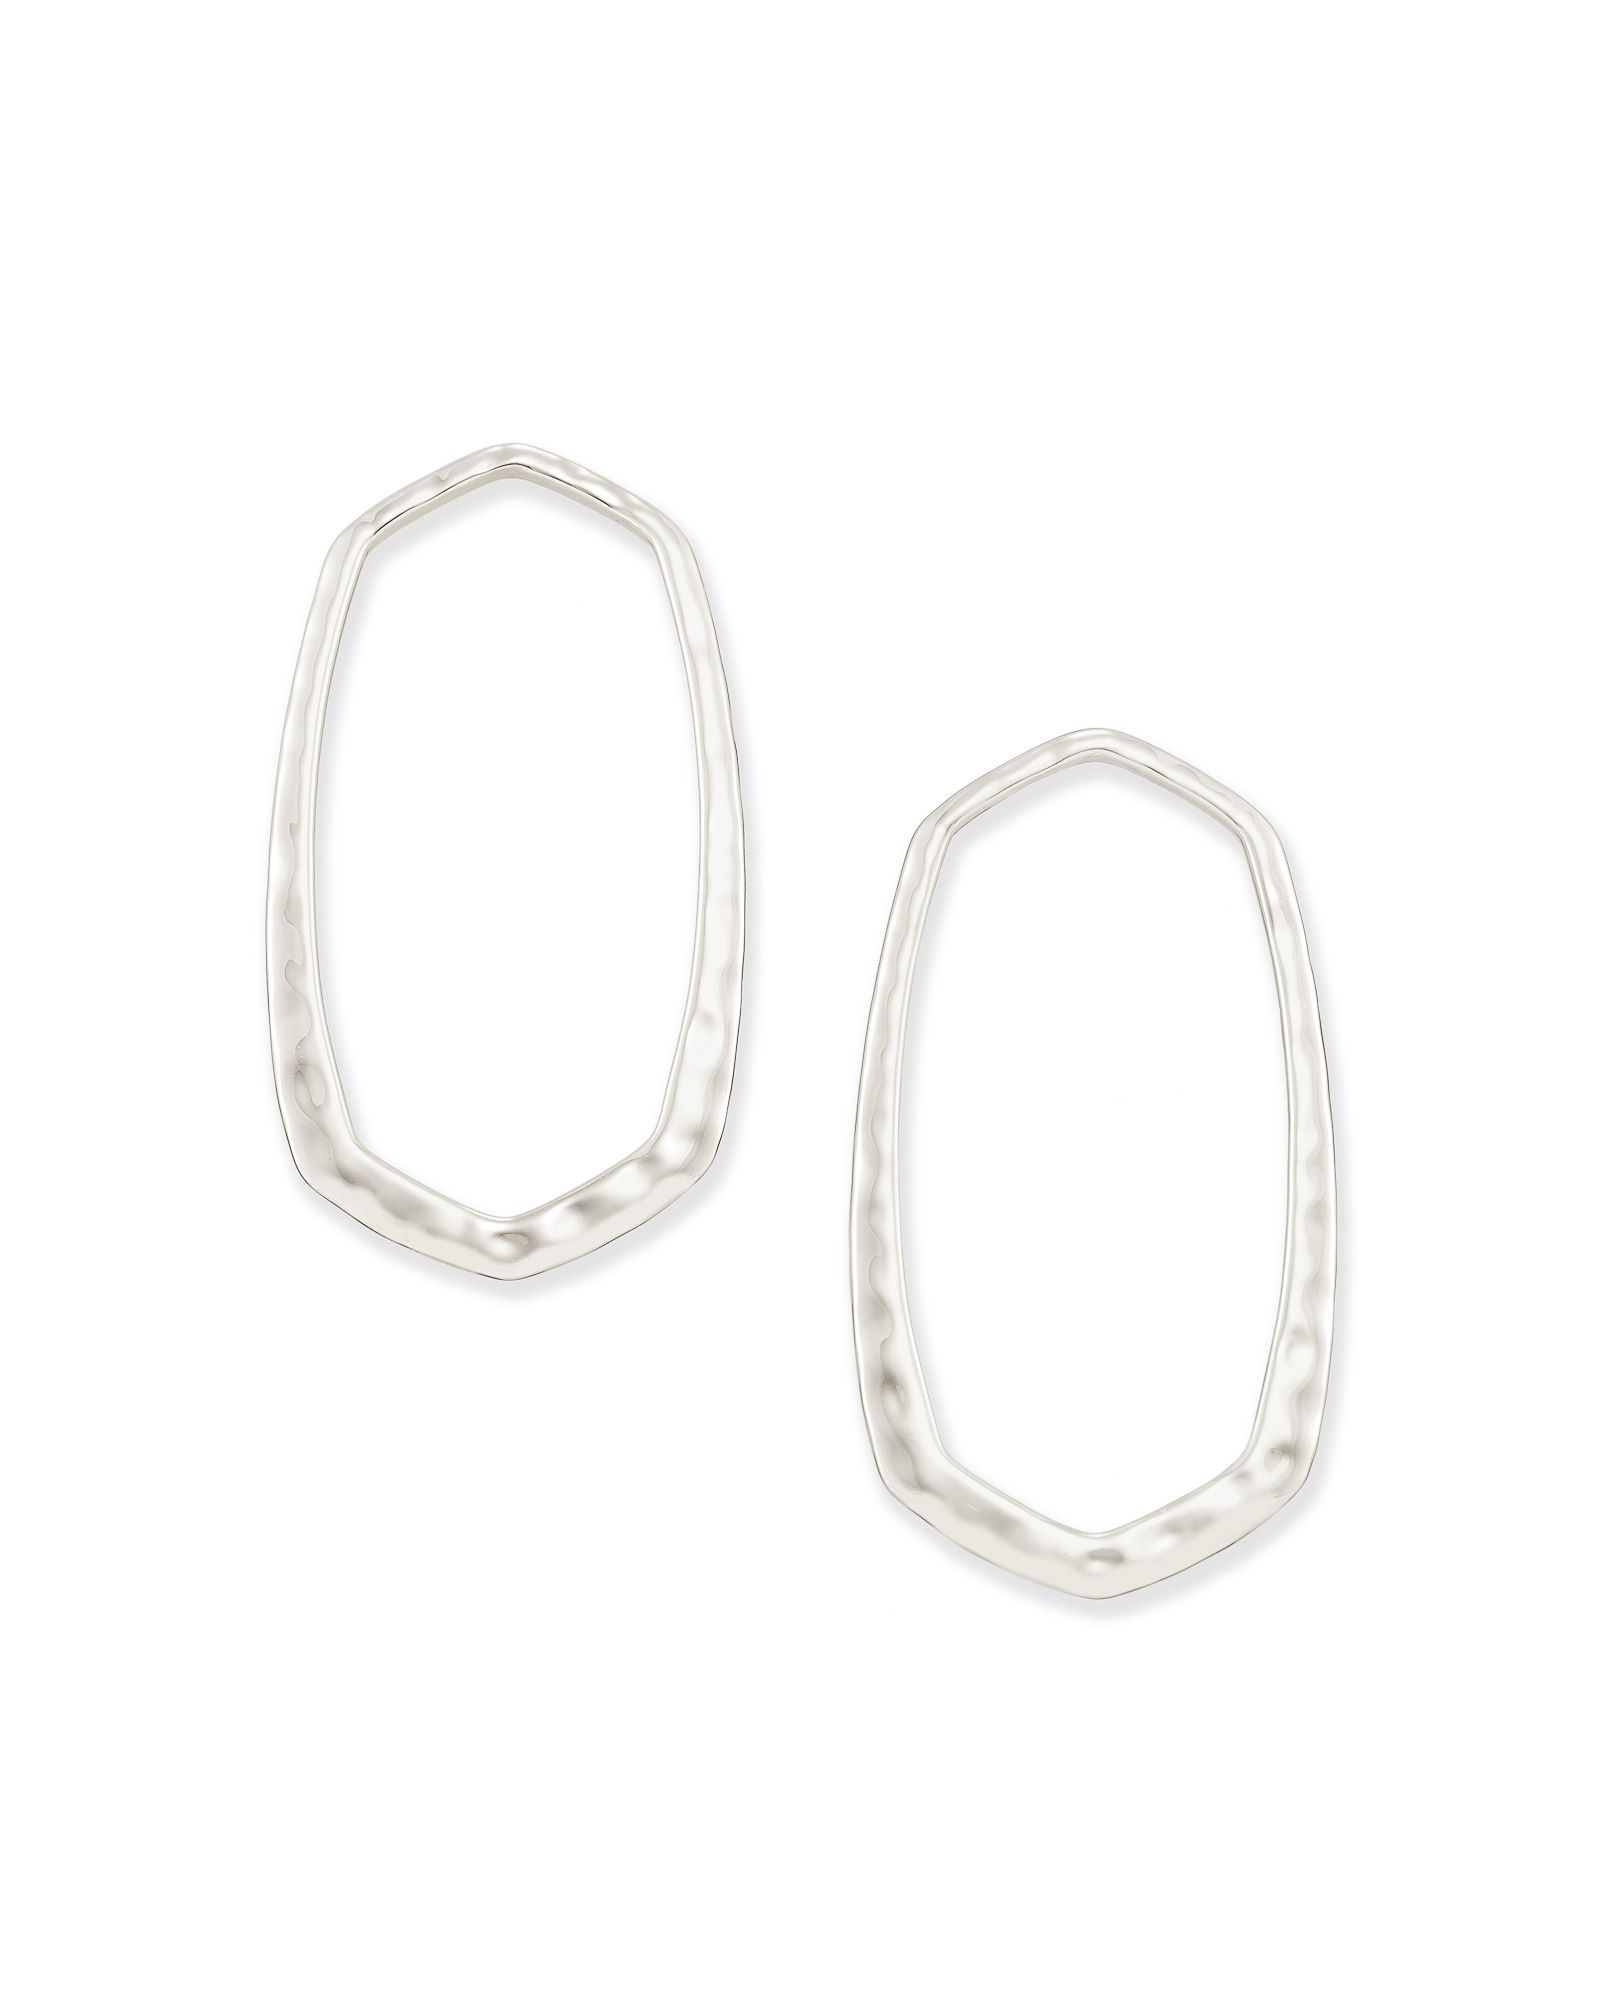 Zorte Hoop Earrings in Silver | Kendra Scott